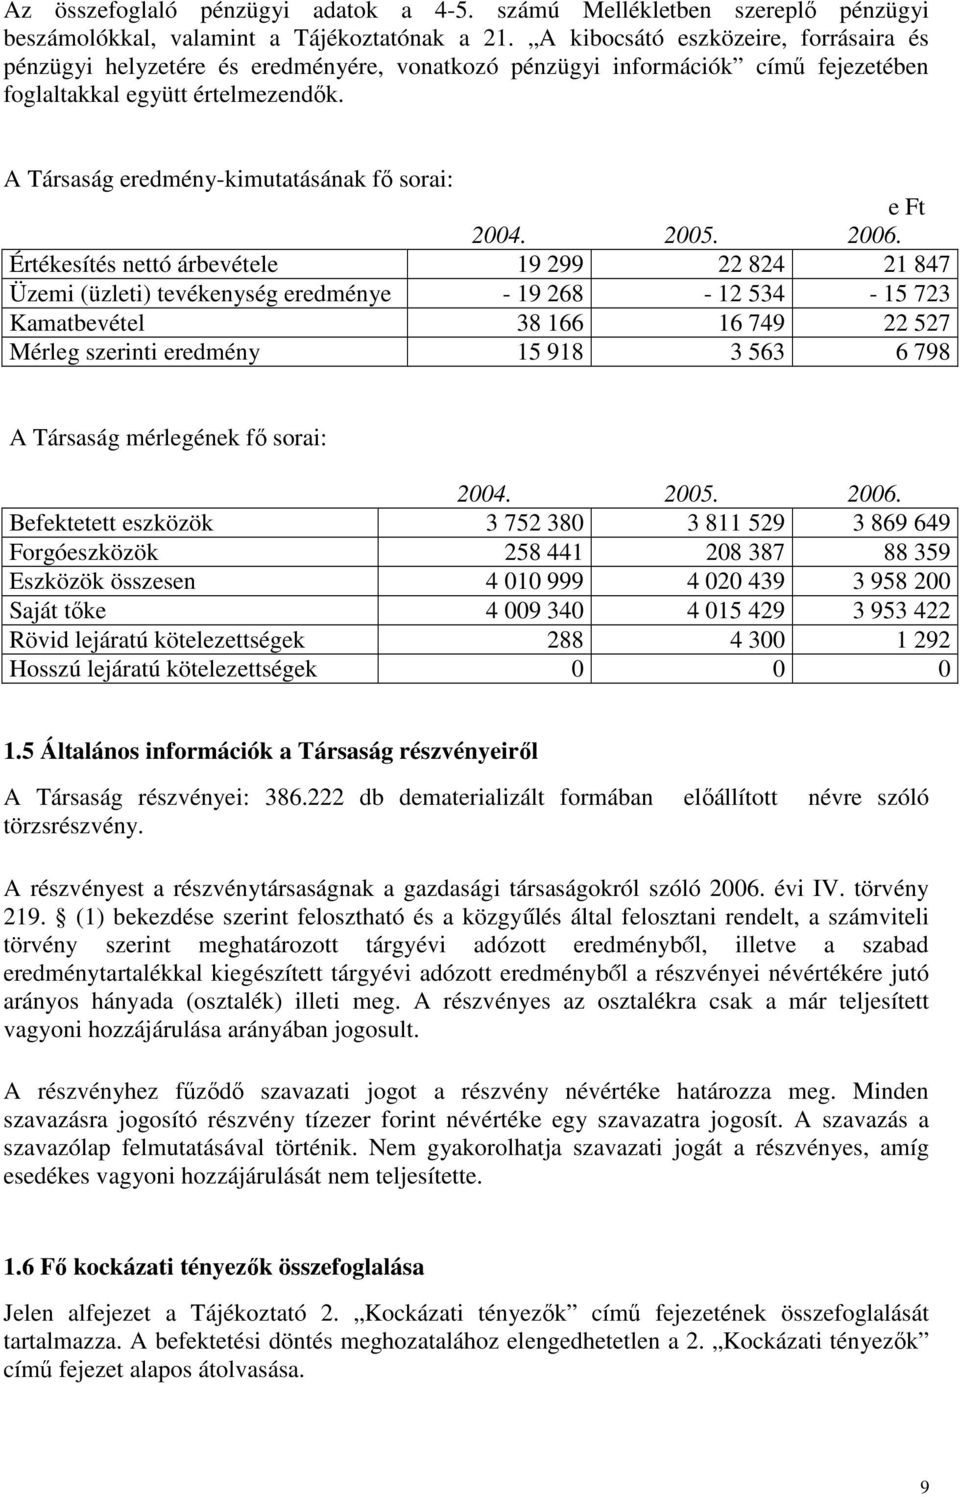 A Társaság eredmény-kimutatásának fı sorai: e Ft 2004. 2005. 2006.